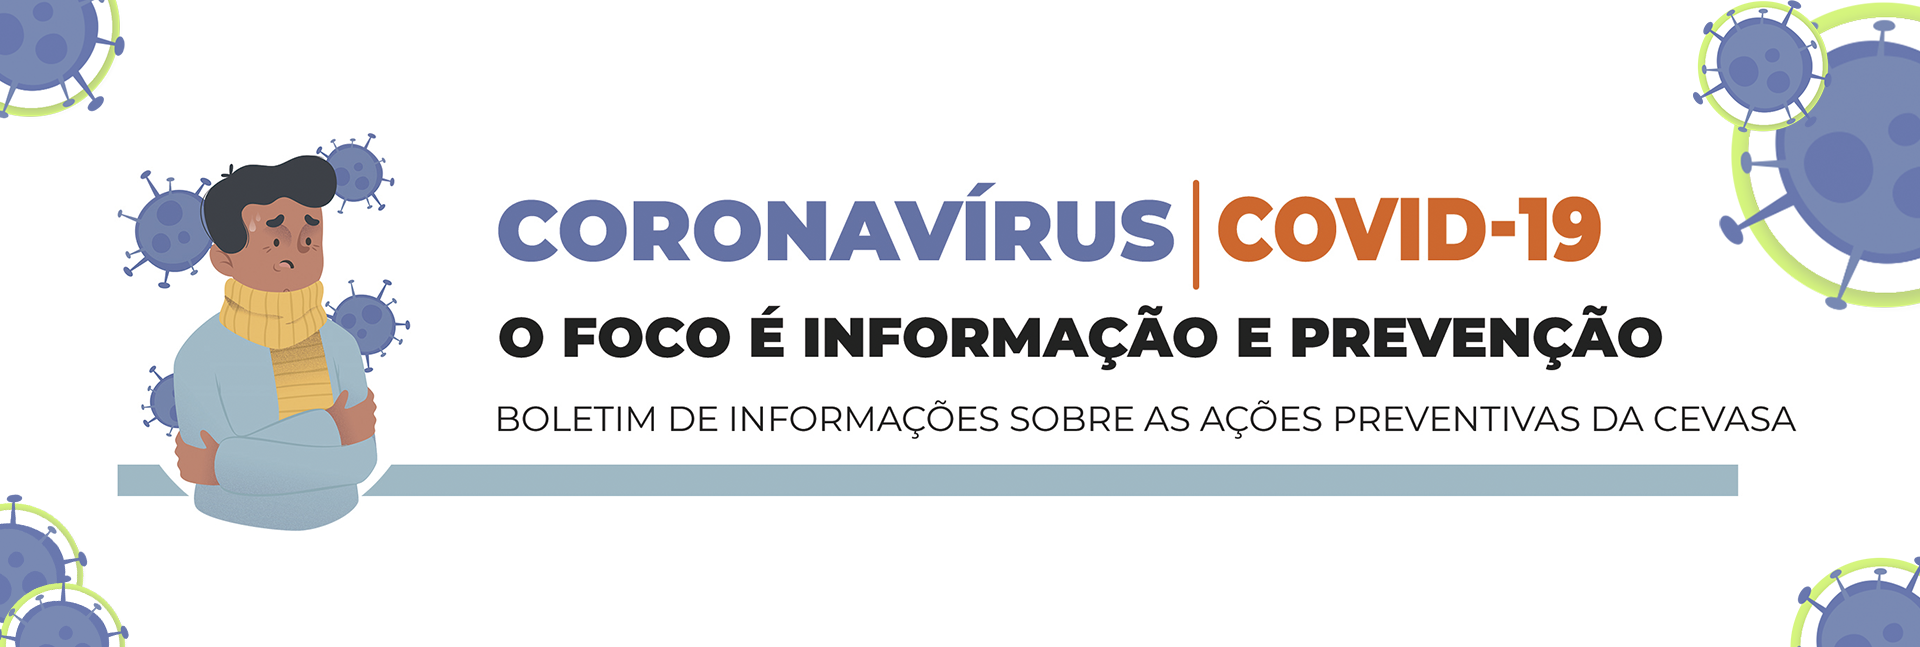 Boletim Informativo de Prevenção ao novo coronavírus